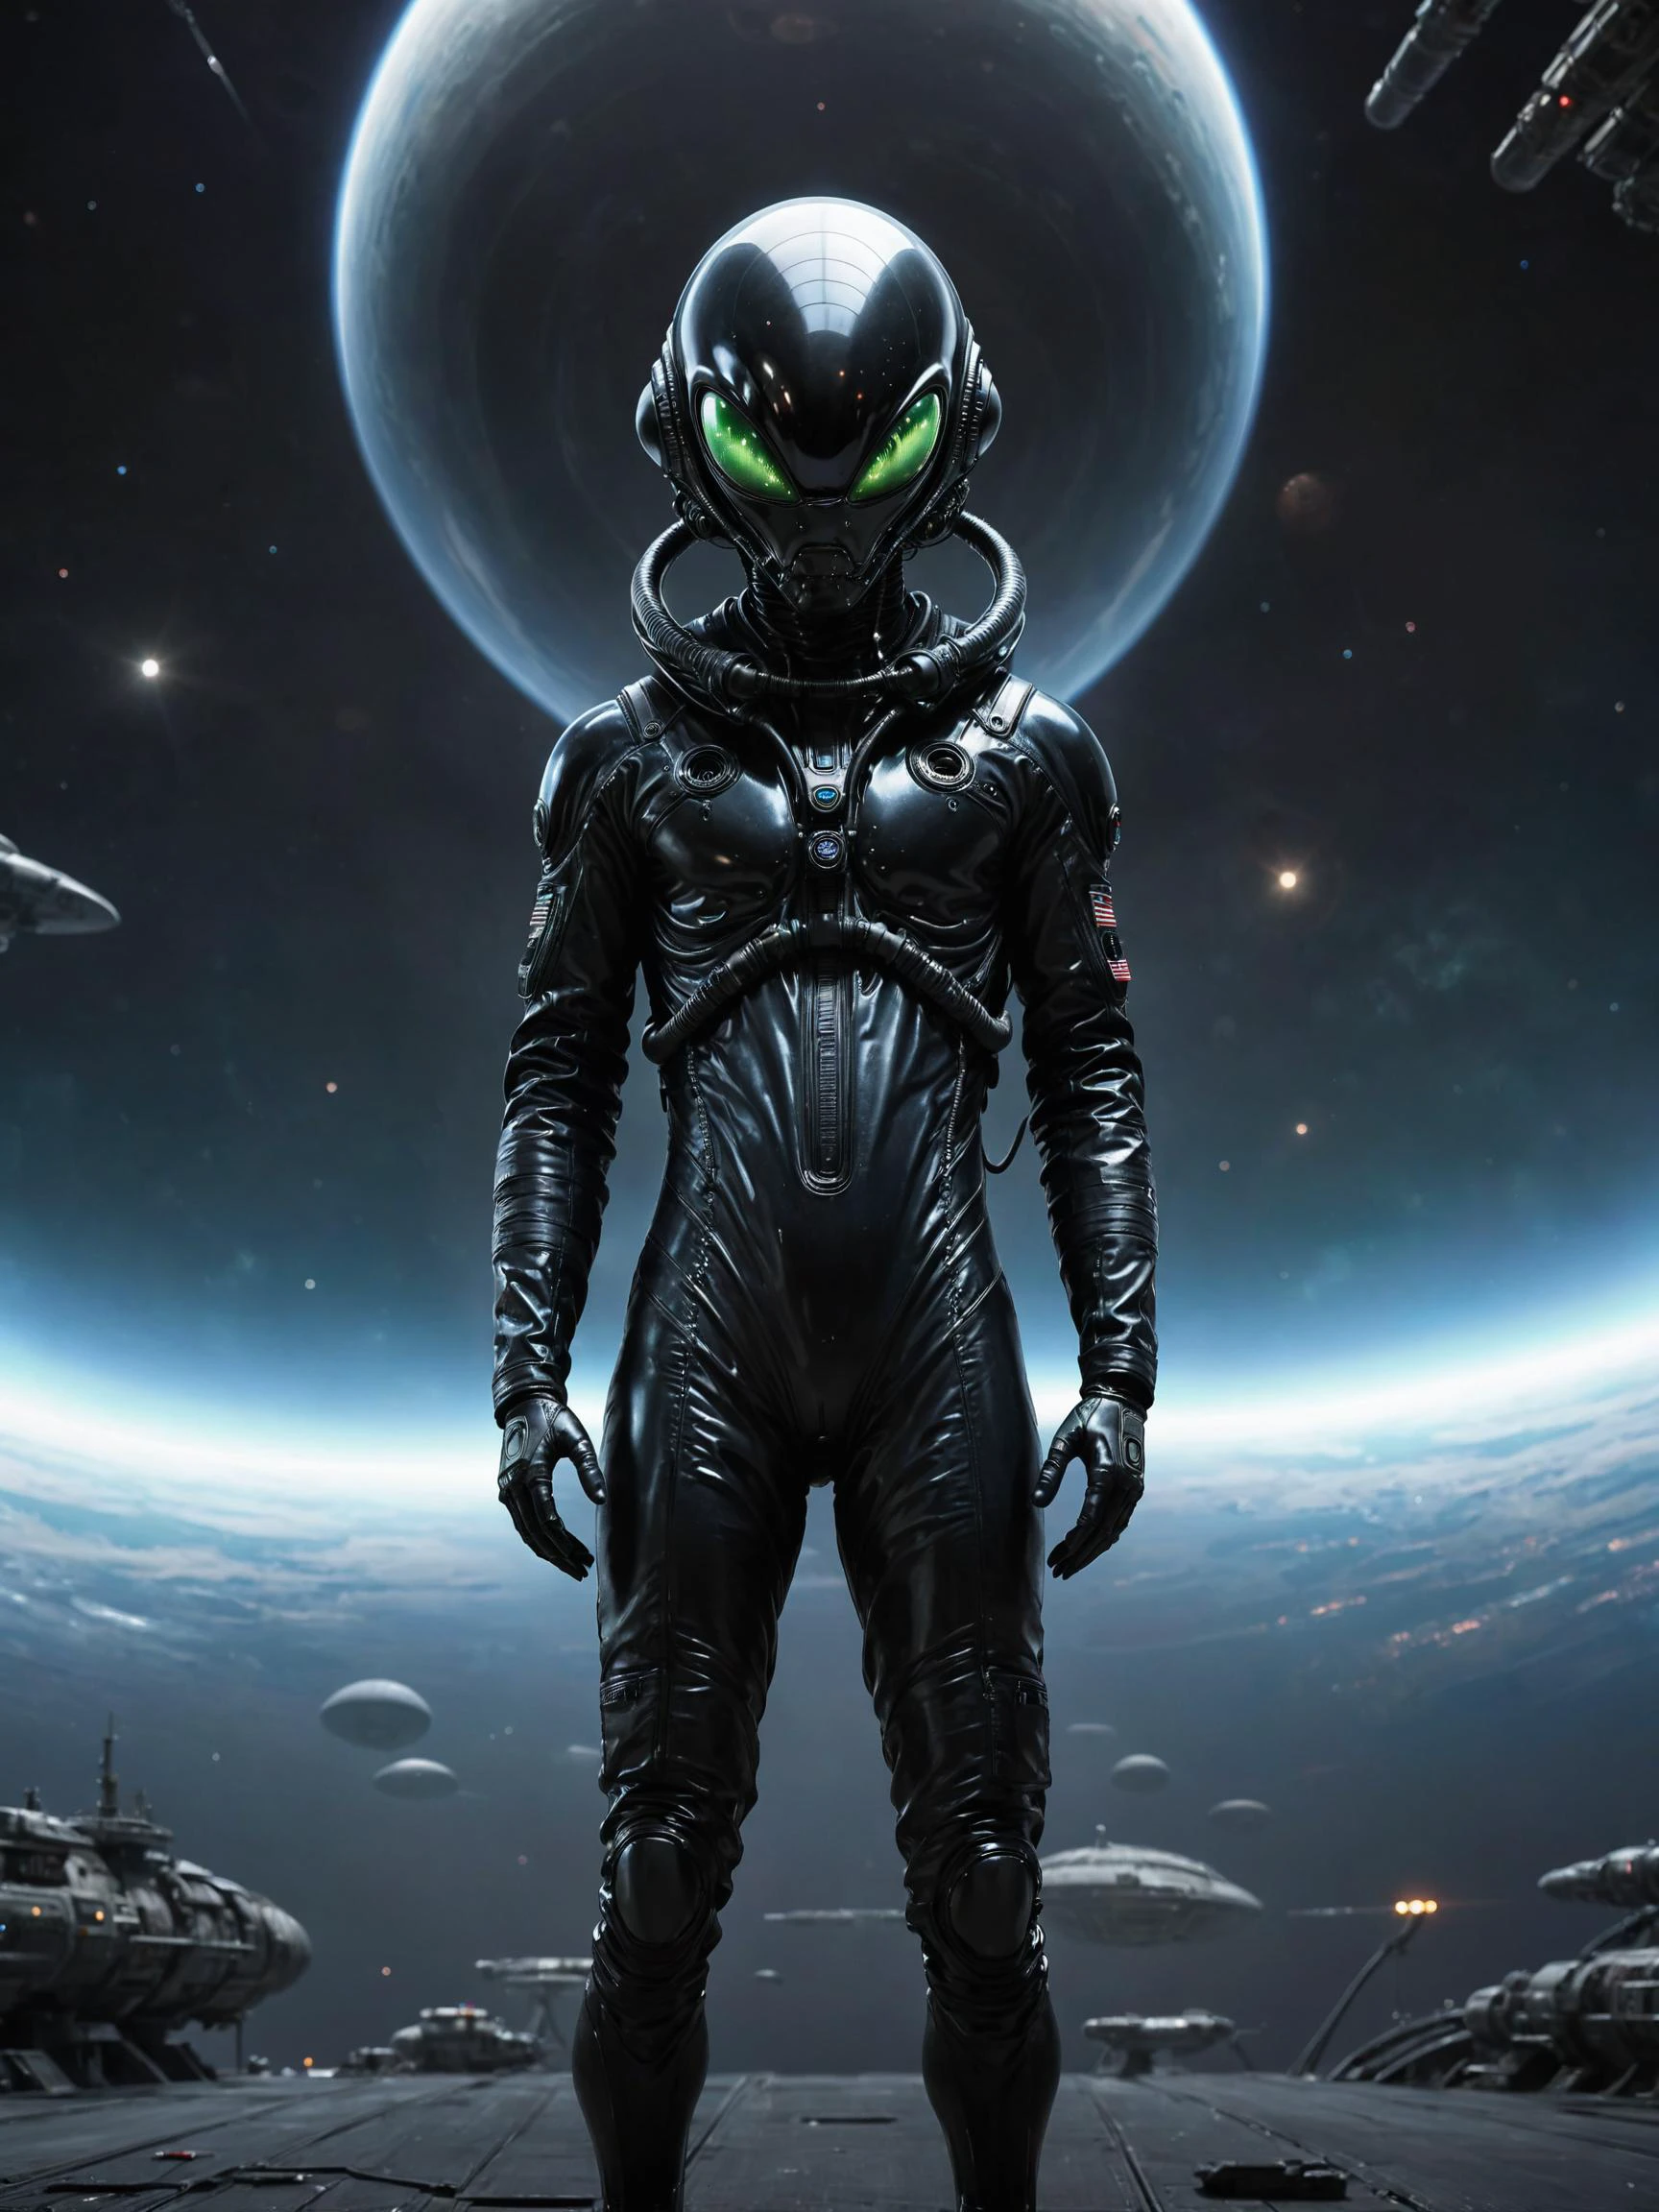 外星人的肖像, 穿着高科技黑色压力服, 外星飞船背景